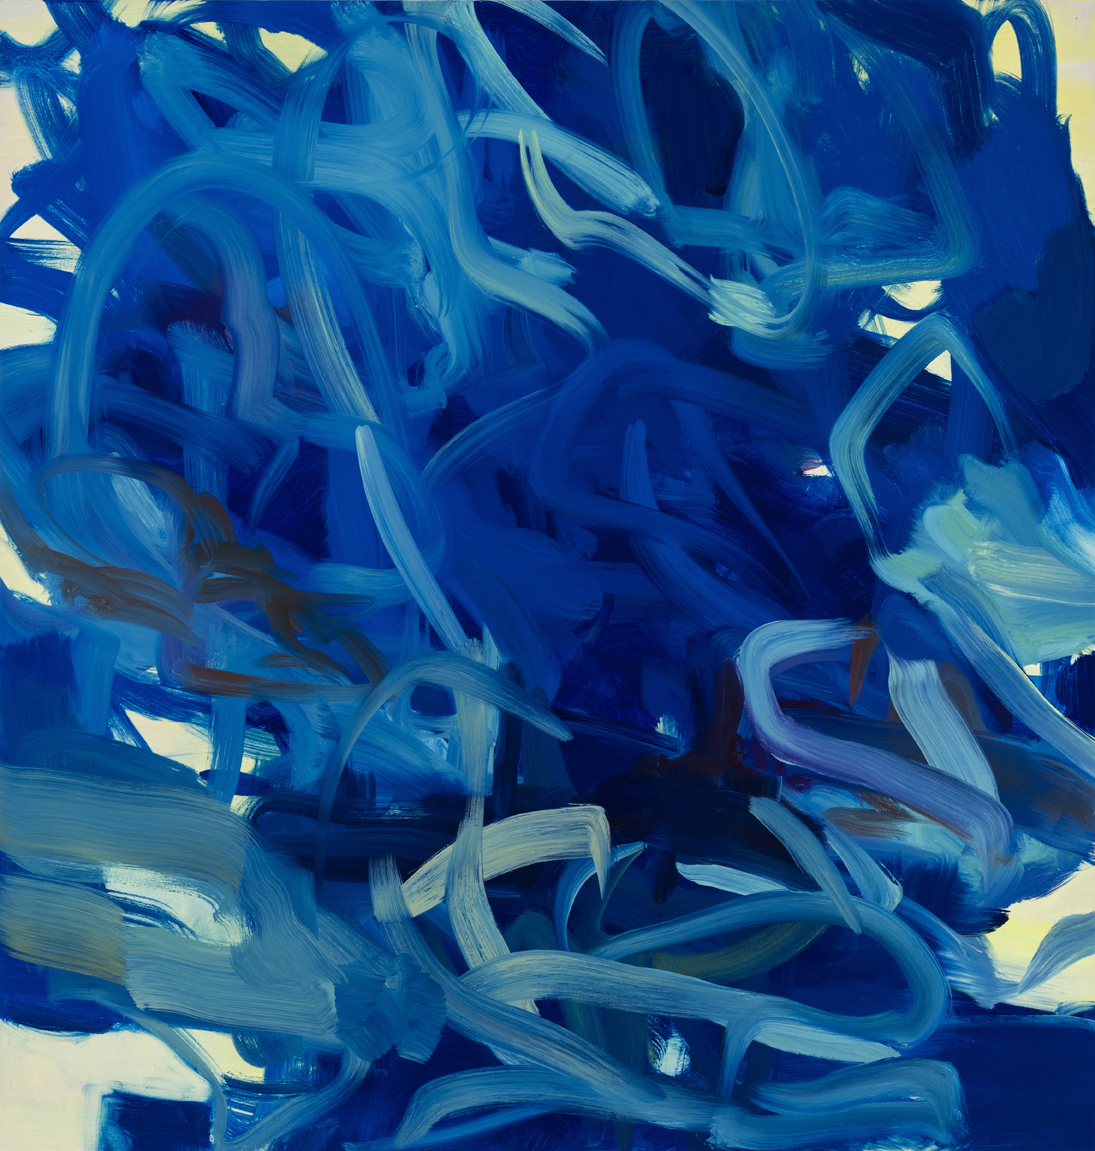  Blue Flow  2018  Oil on canvas  107 x 102cm 